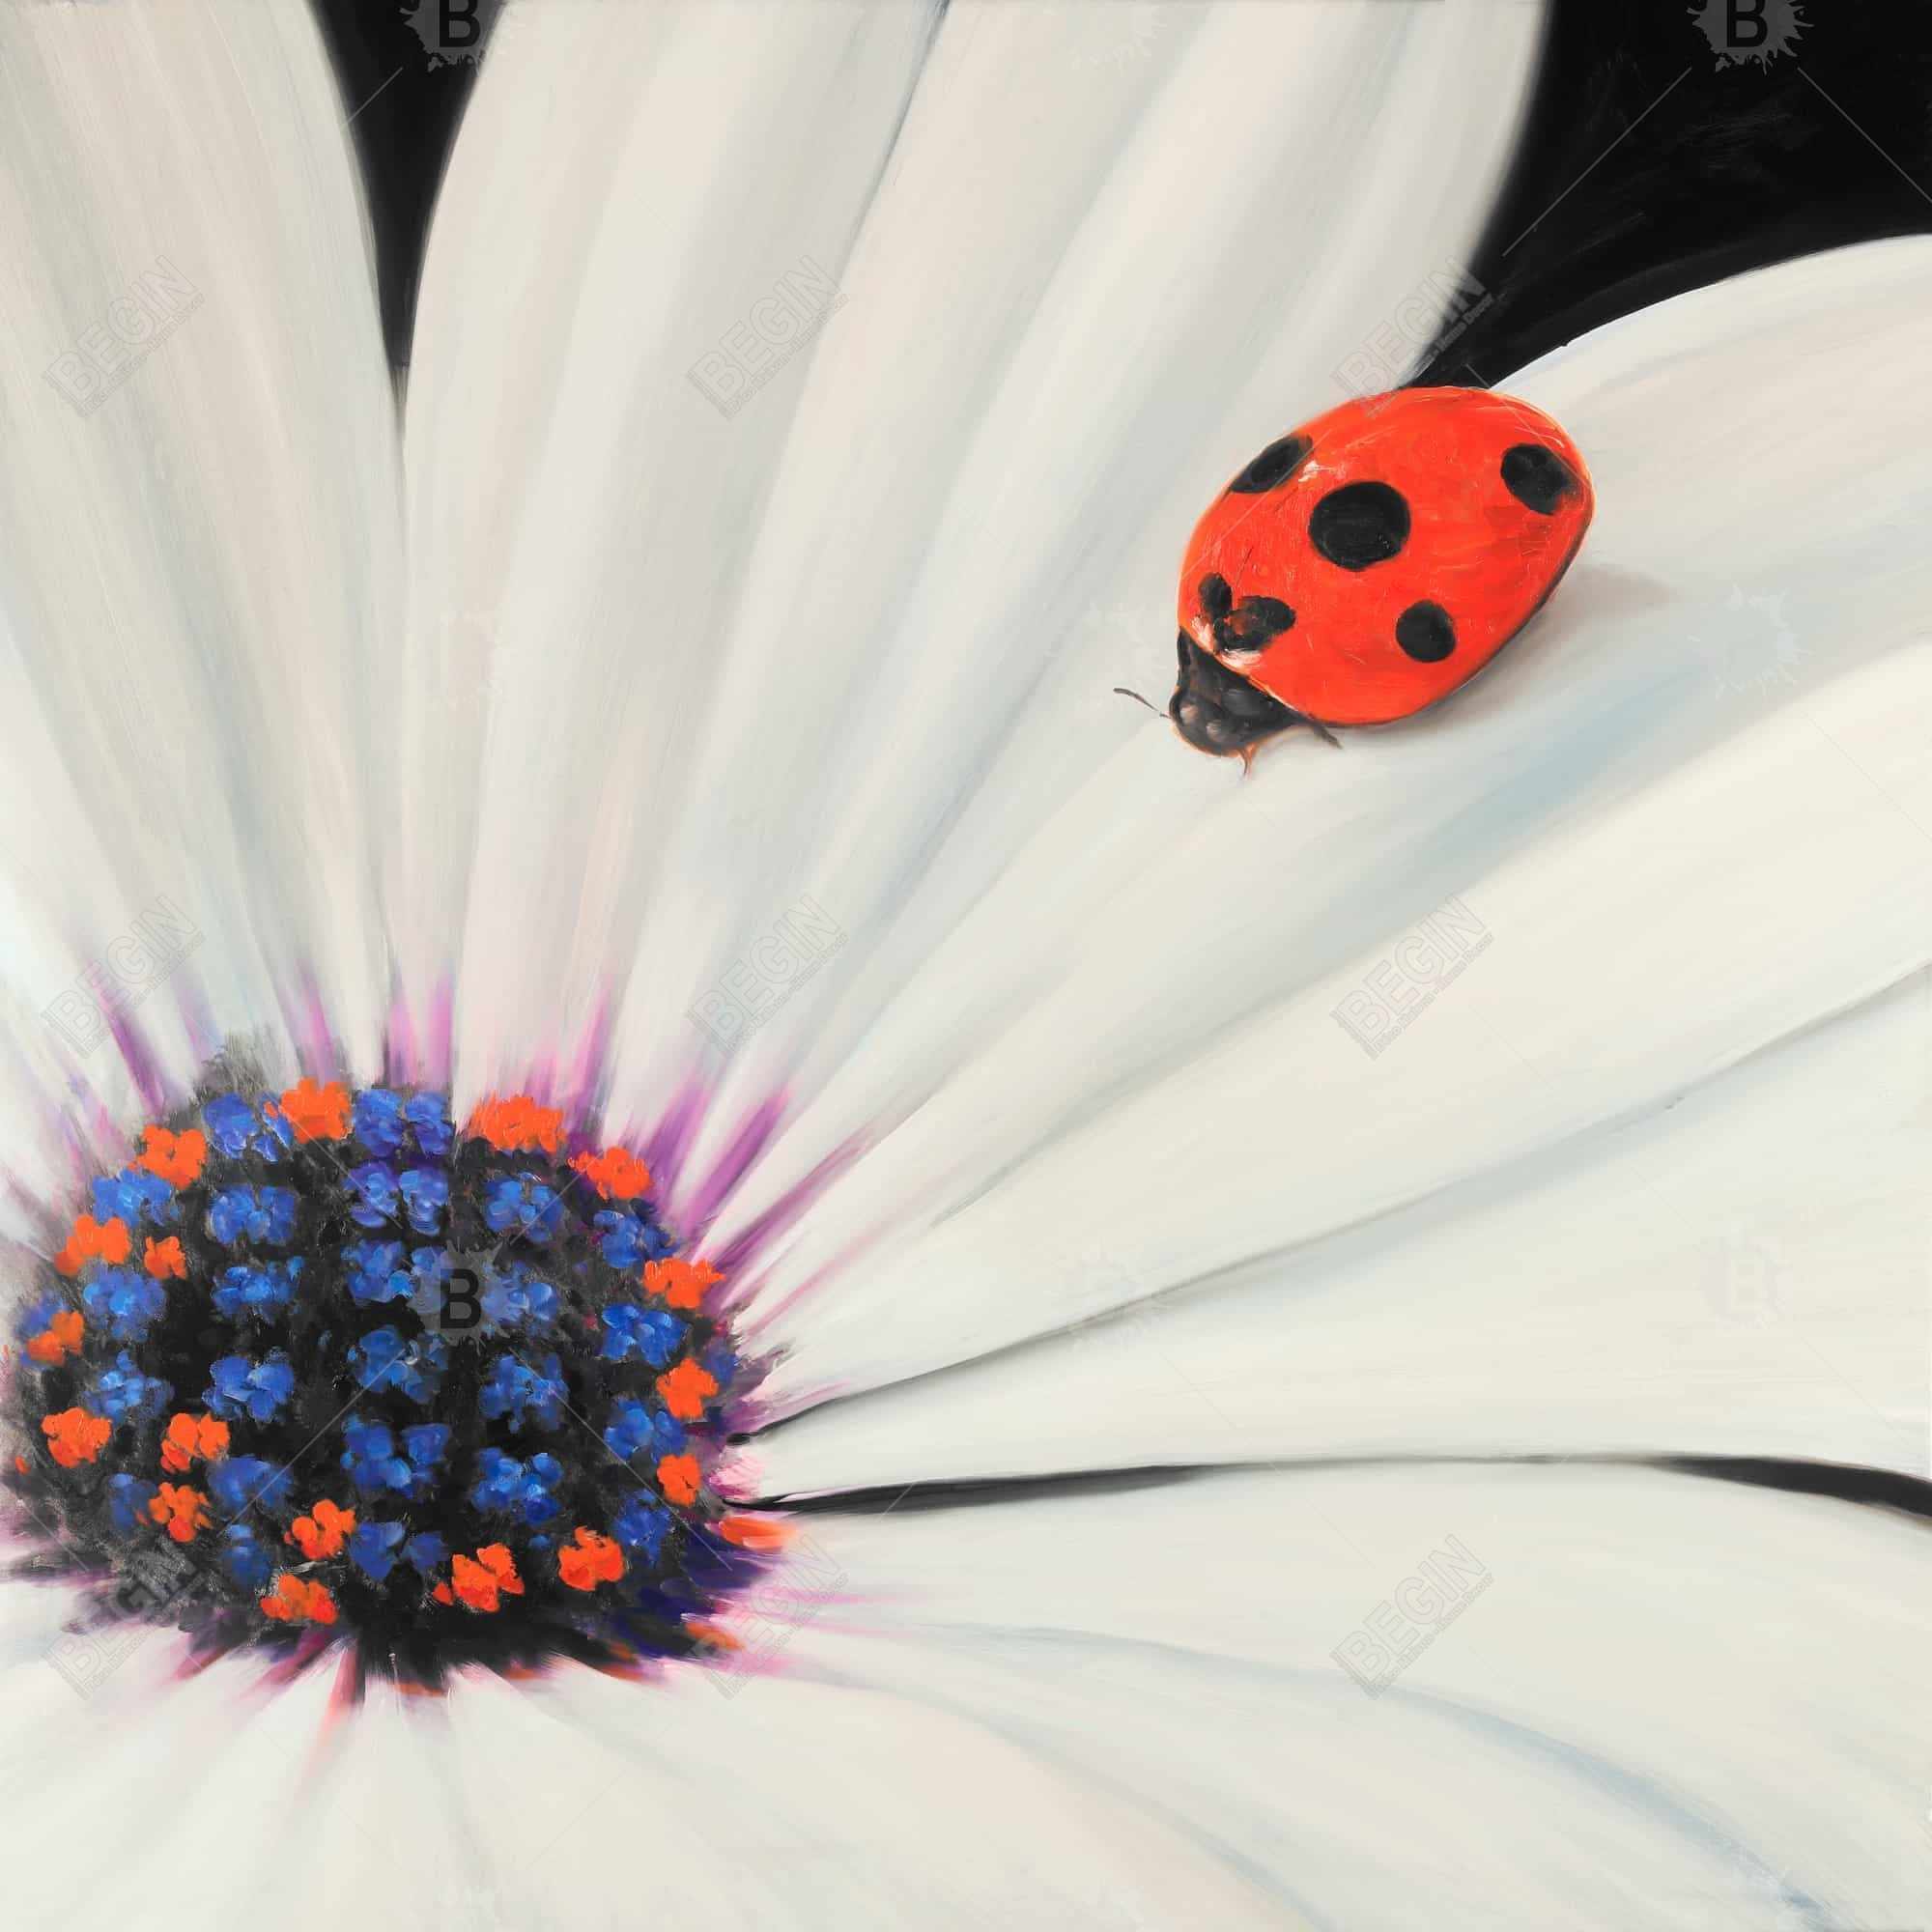 White daisy and ladybug